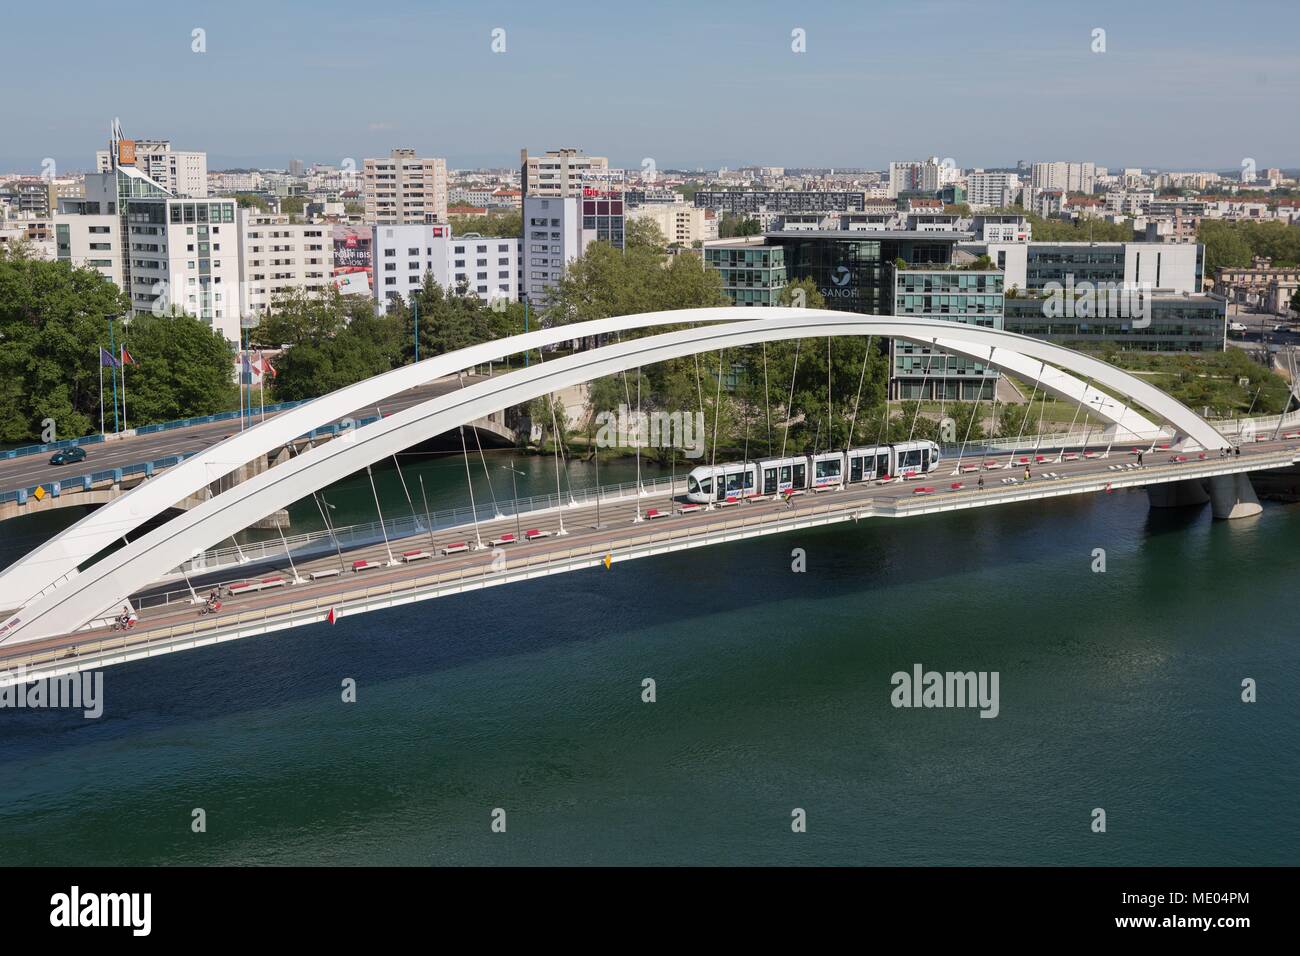 France, Lyon, Musée des Confluences, architect : Agence Coop Himmelb(l)au, Pont Raymond Barre, Pont Pasteur over the Rhône Stock Photo